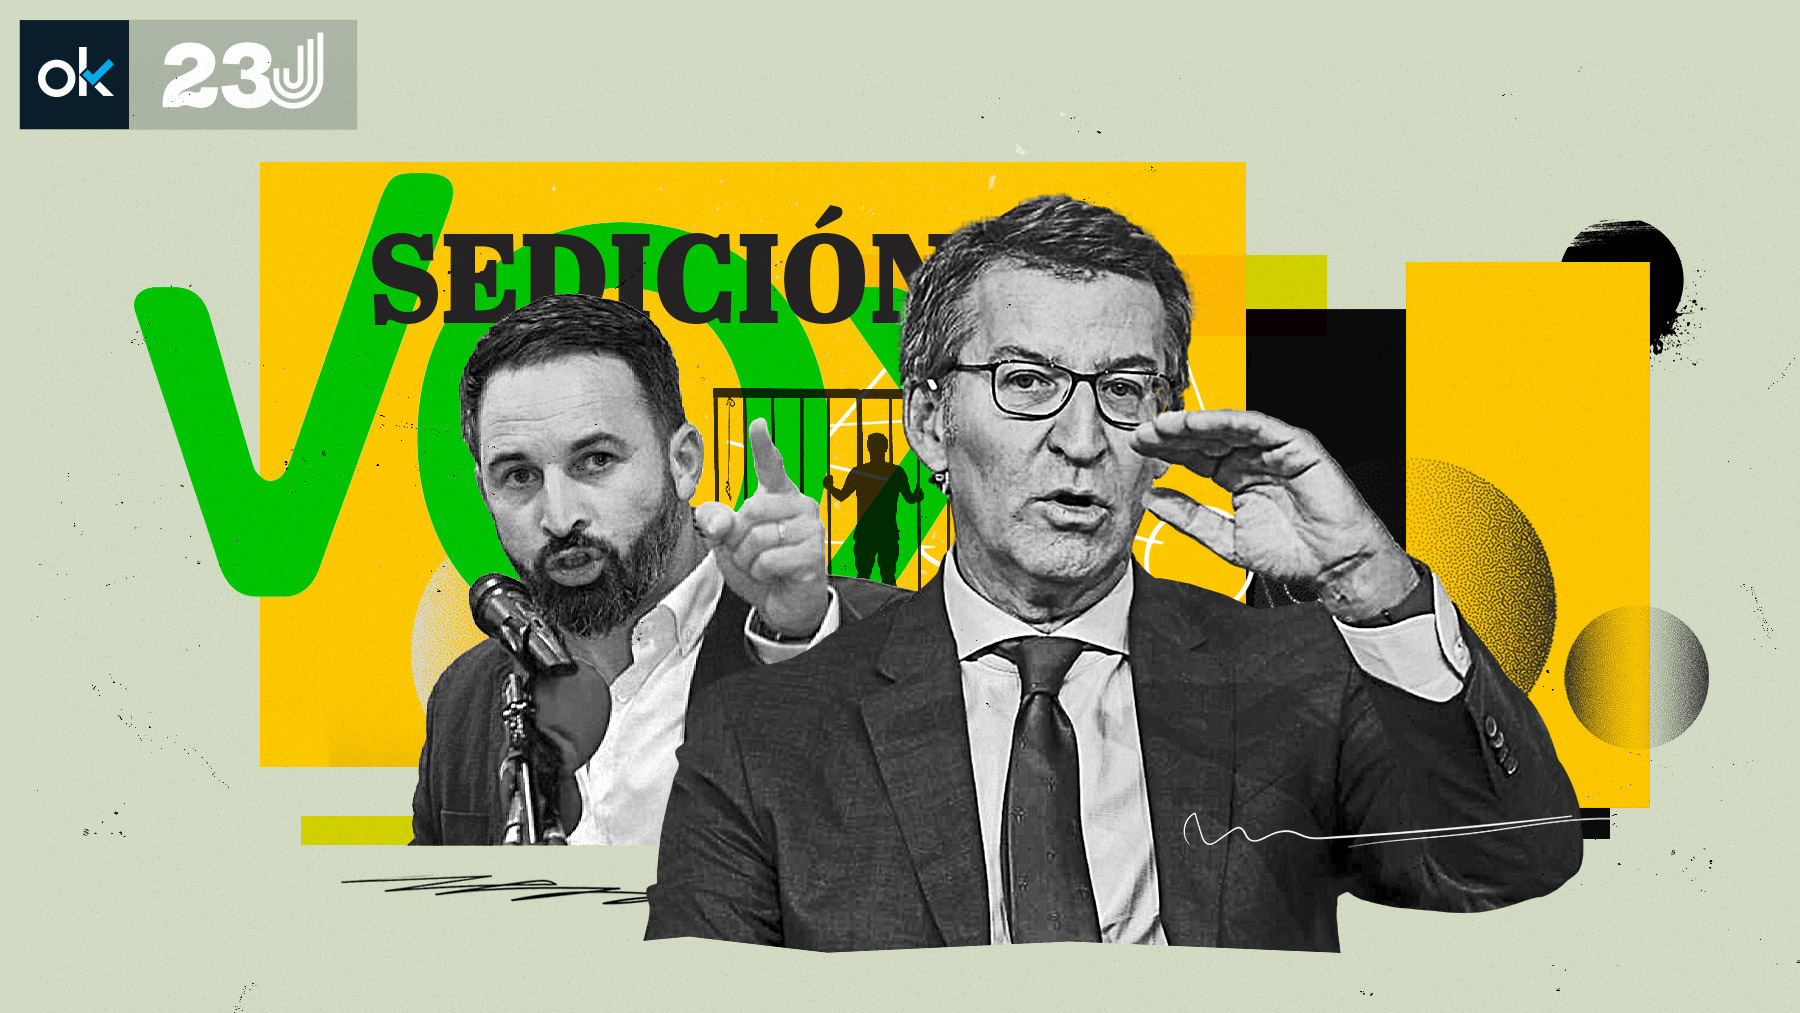 Vox exigirá al PP recuperar el delito de sedición sin esperar al fallo del Constitucional